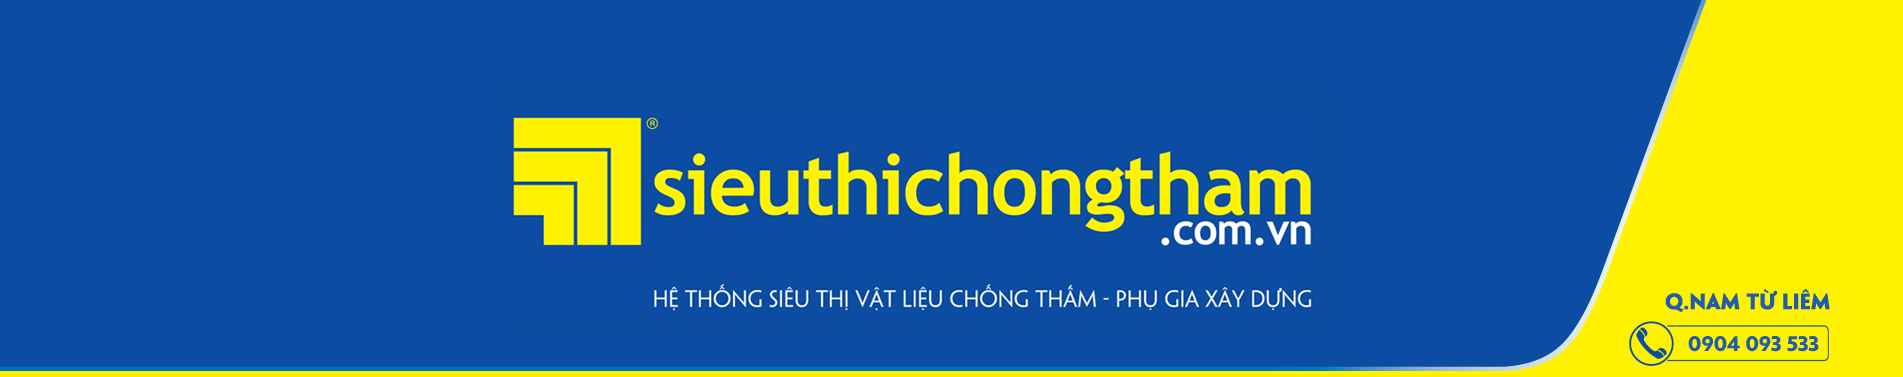 Nam Tu Liem Banner 1